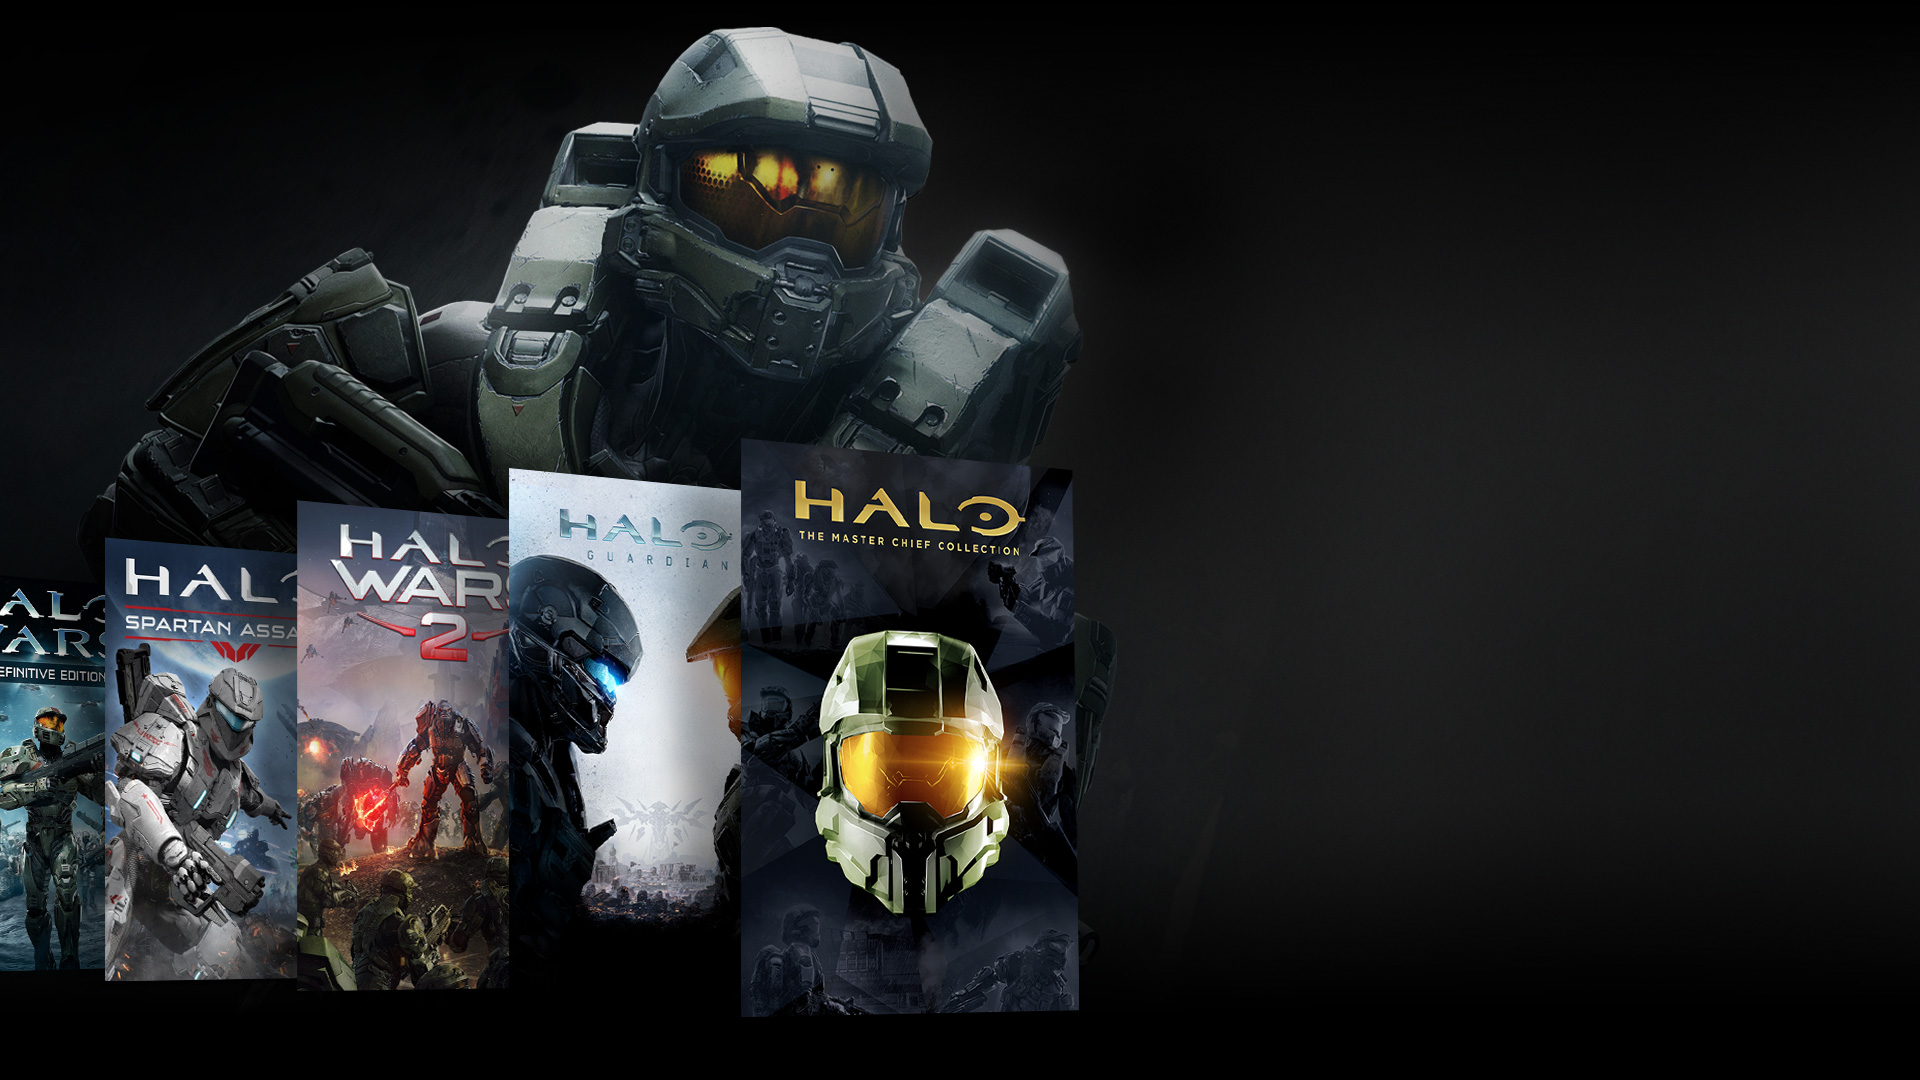 Vista frontal de un personaje de Halo parado delante de un collage de juegos Halo